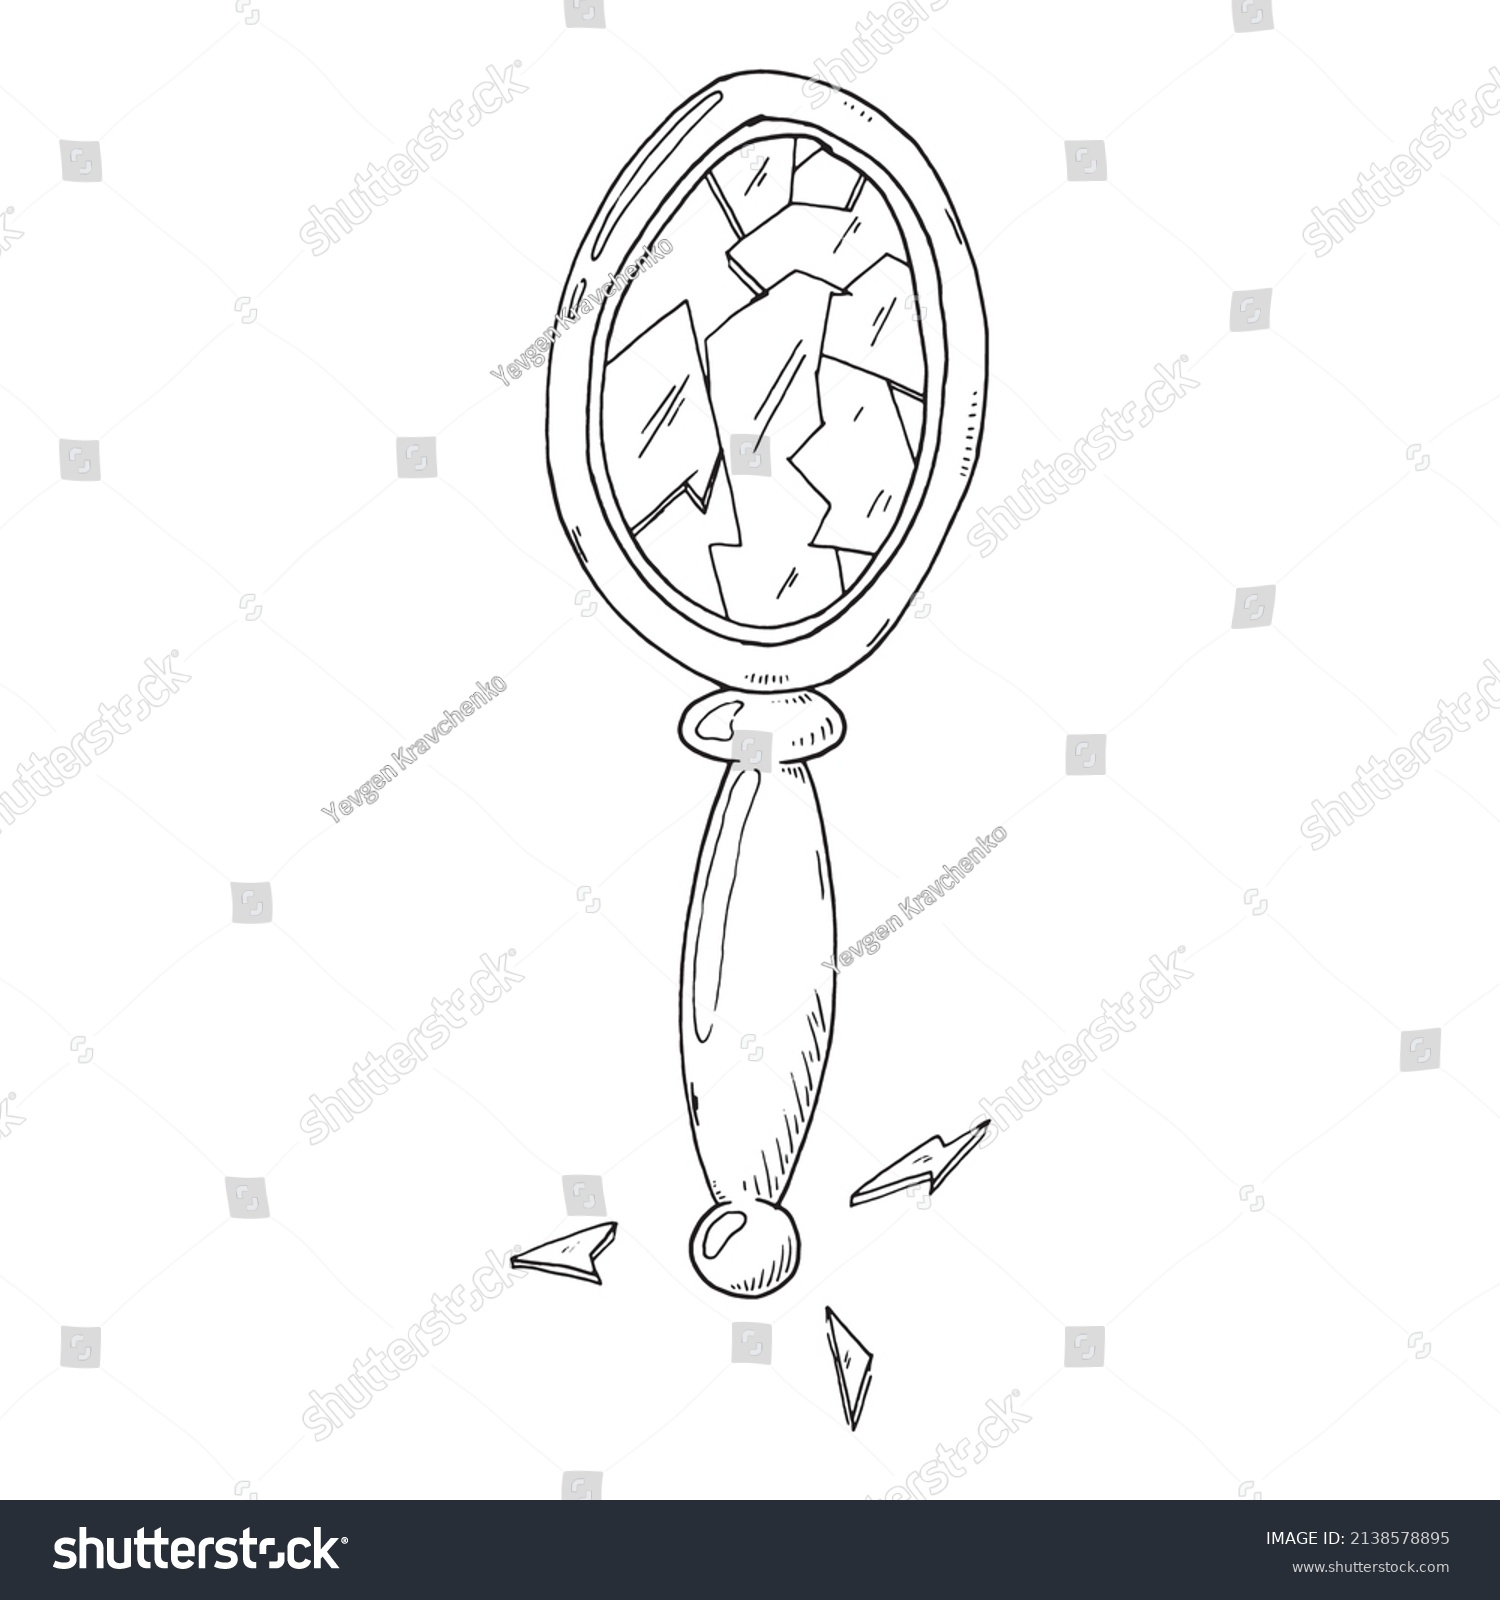 SVG of Broken mirror. Vector illustration of shards of a vintage mirror. svg